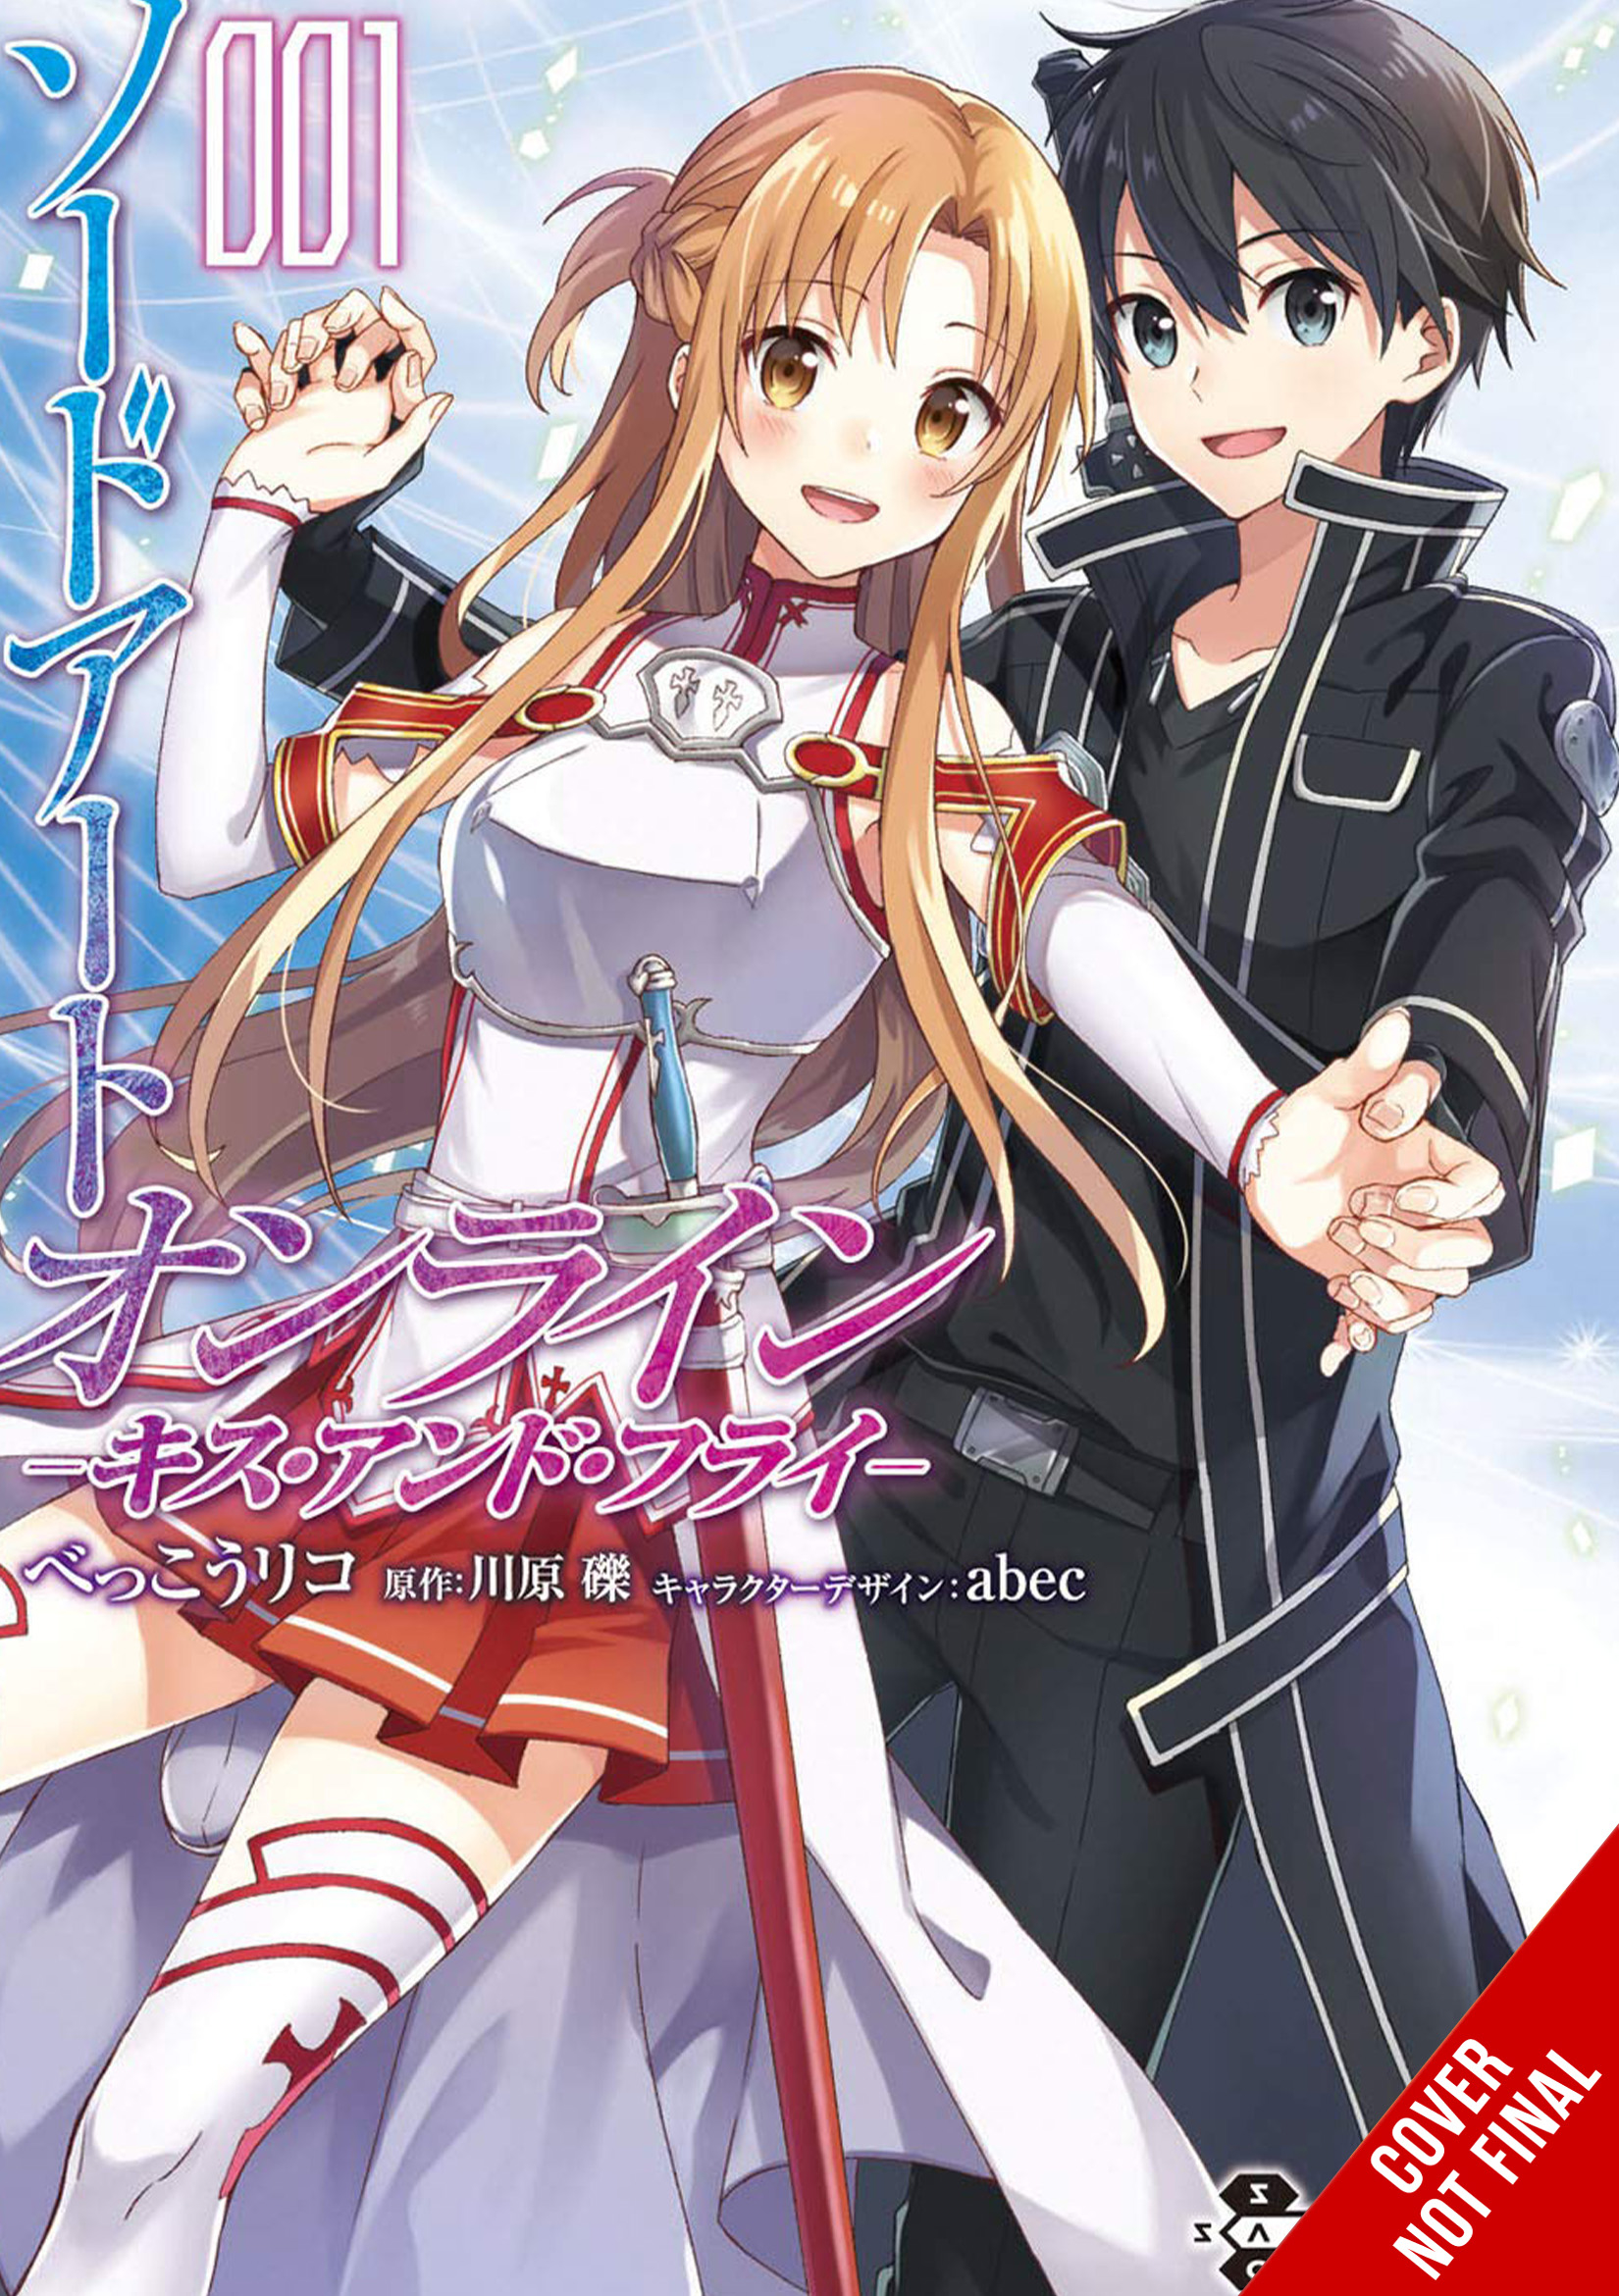 Sword Art Online Kiss & Fly Manga Volume 1